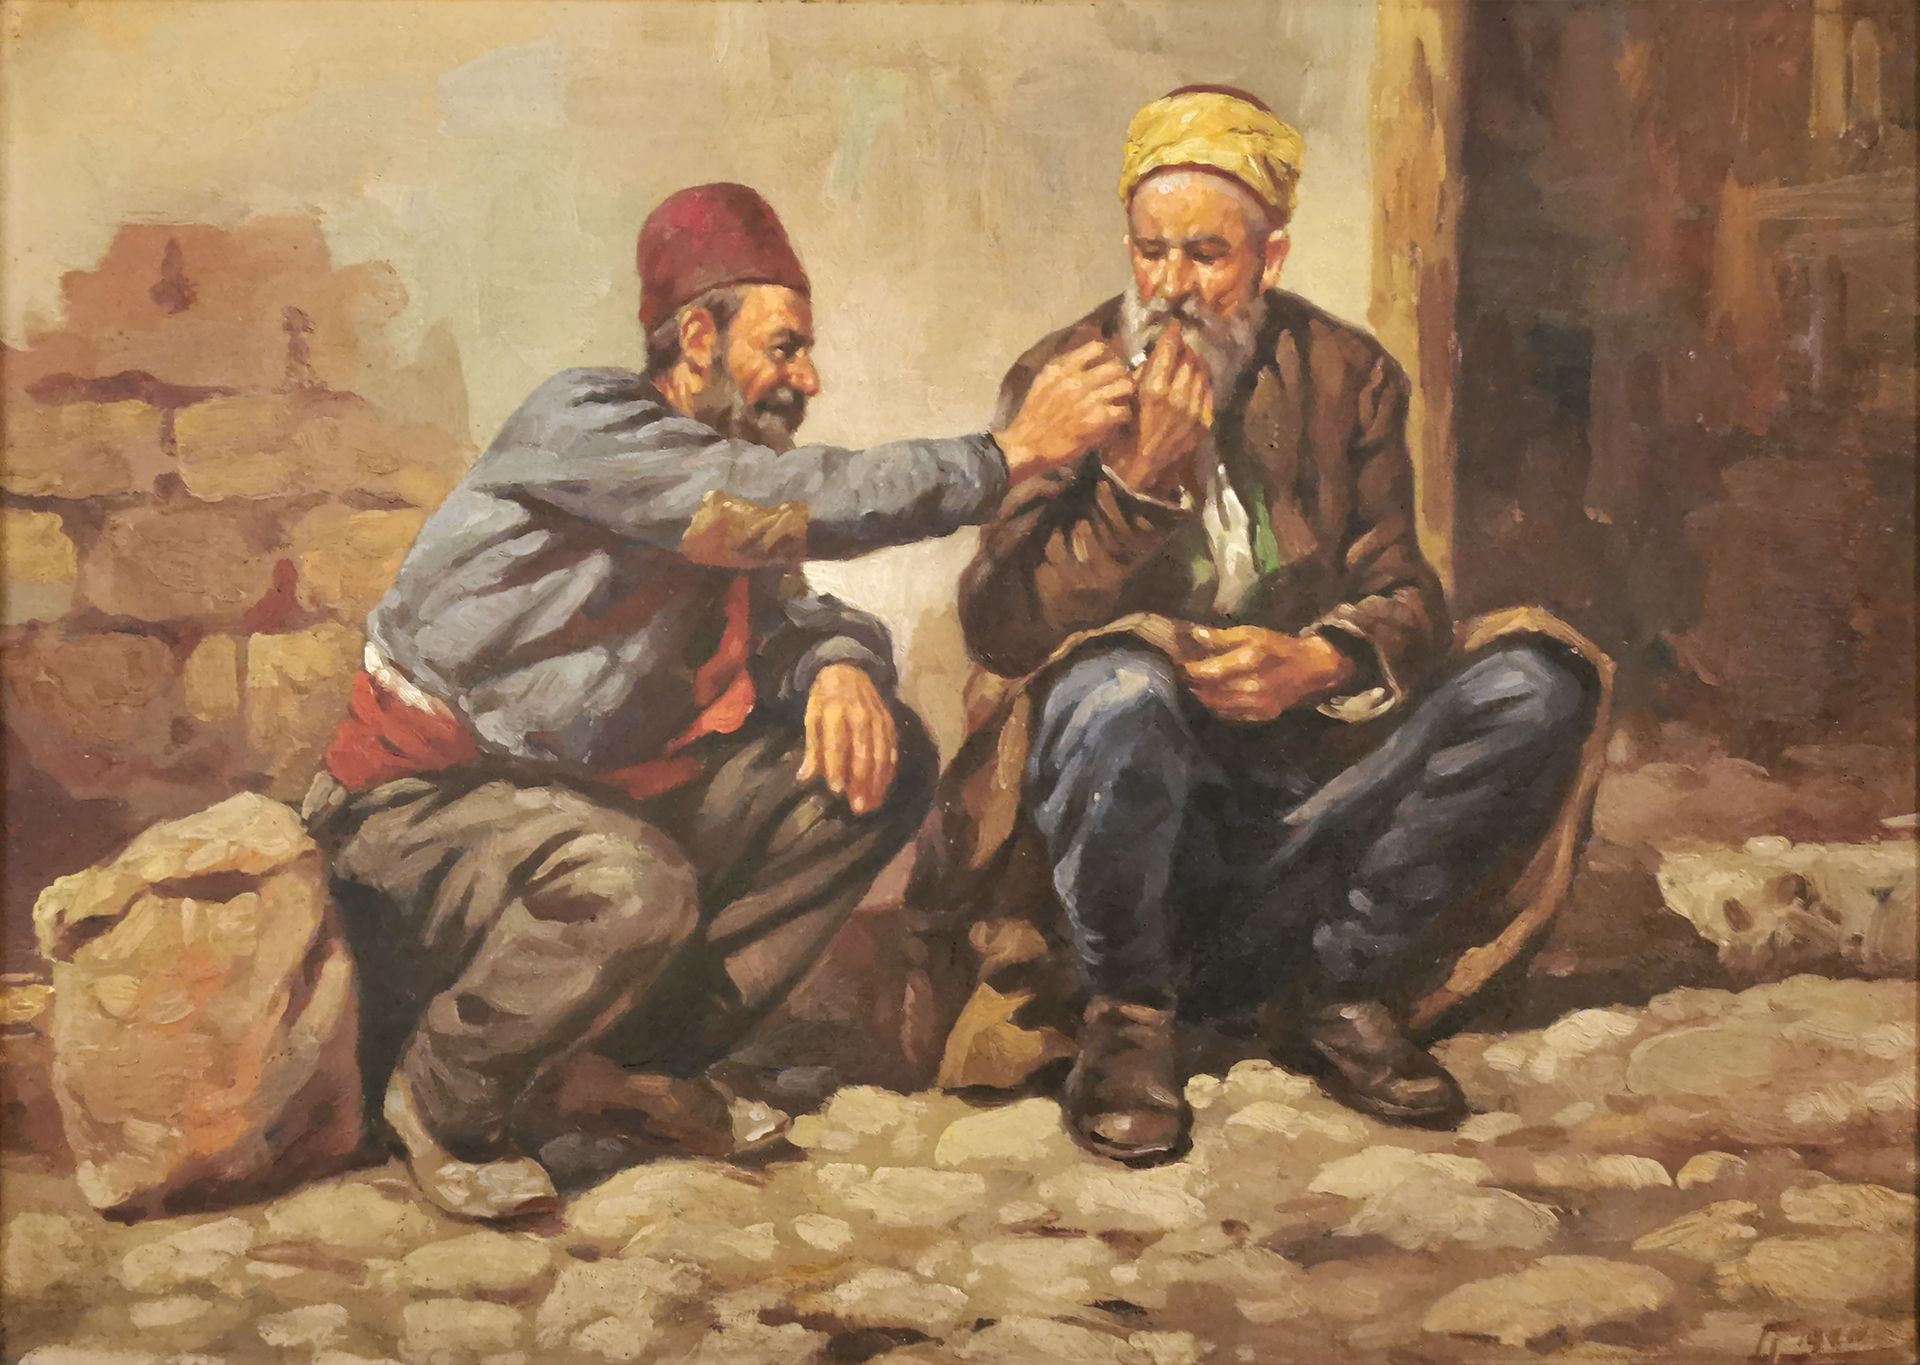 Null École orientaliste du XXe siècle

Les fumeurs

Huile sur toile datée 1940

&hellip;